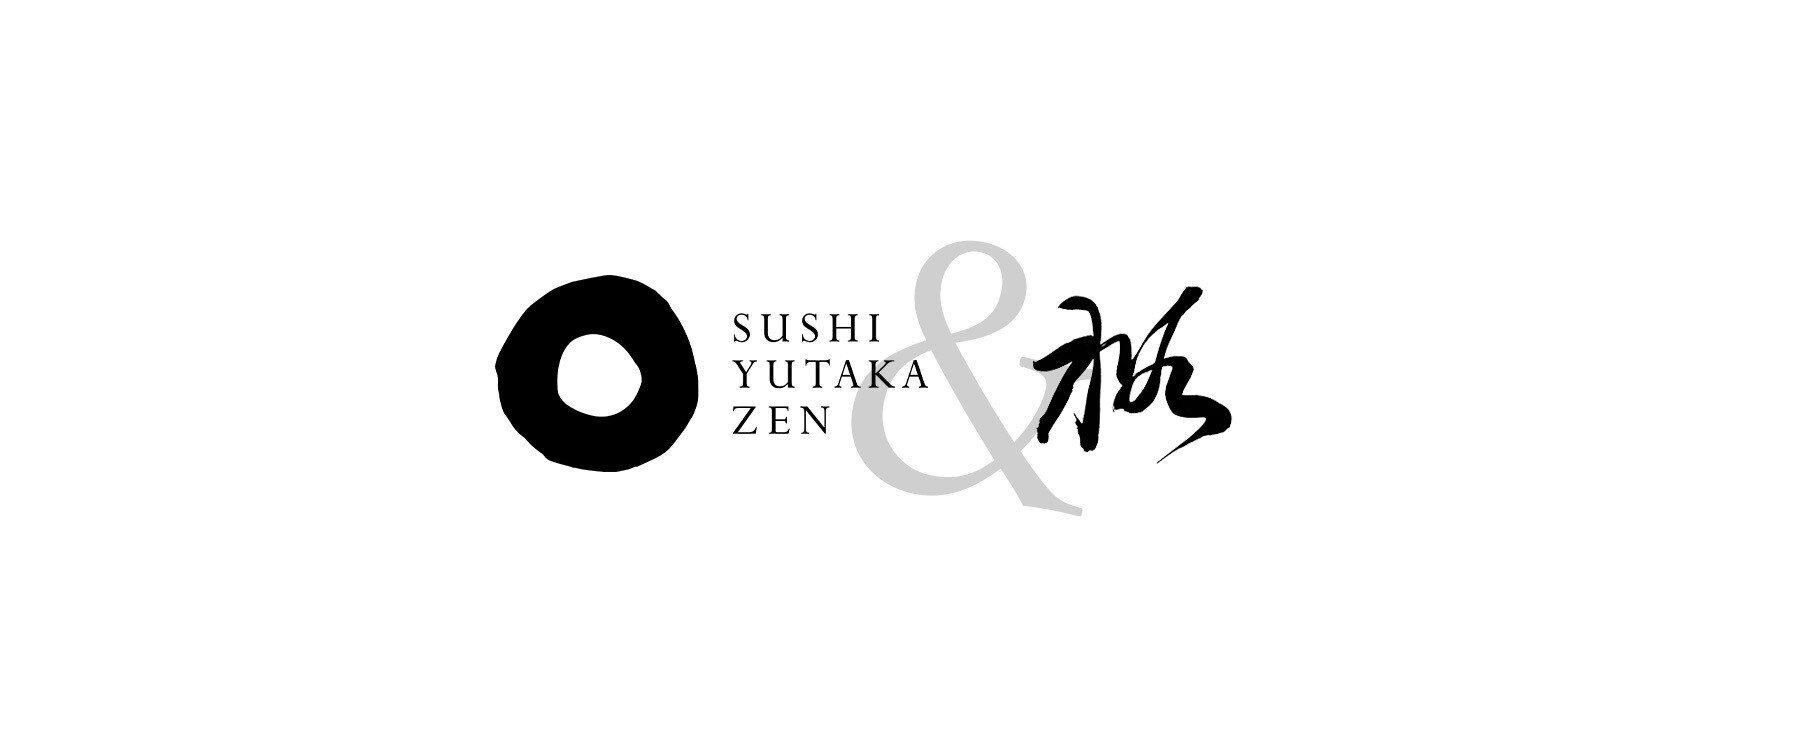 [Finished]Sushi Yutaka ＆ Zen's image